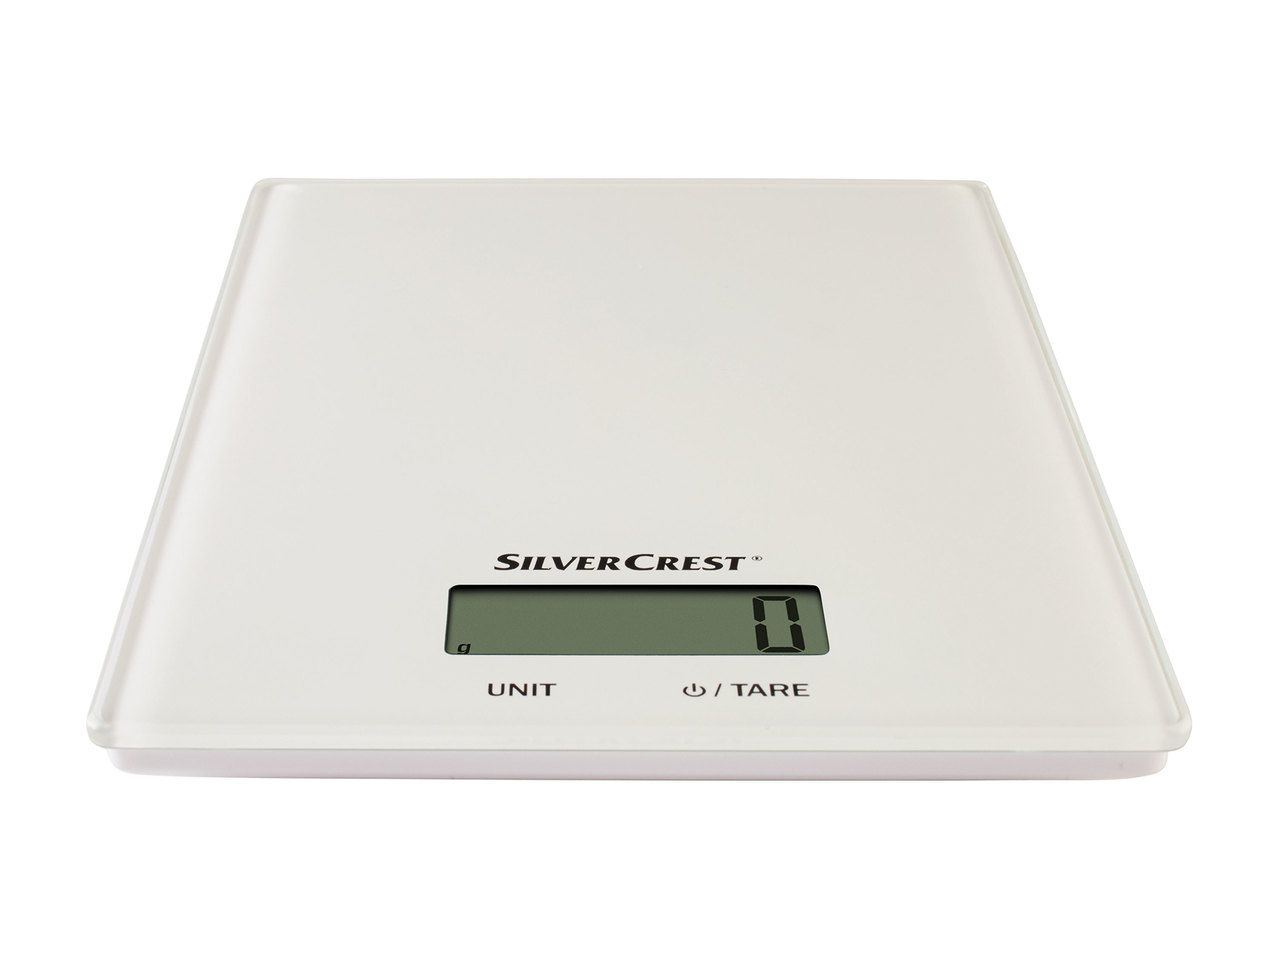 Silvercrest Digital Kitchen Scales1